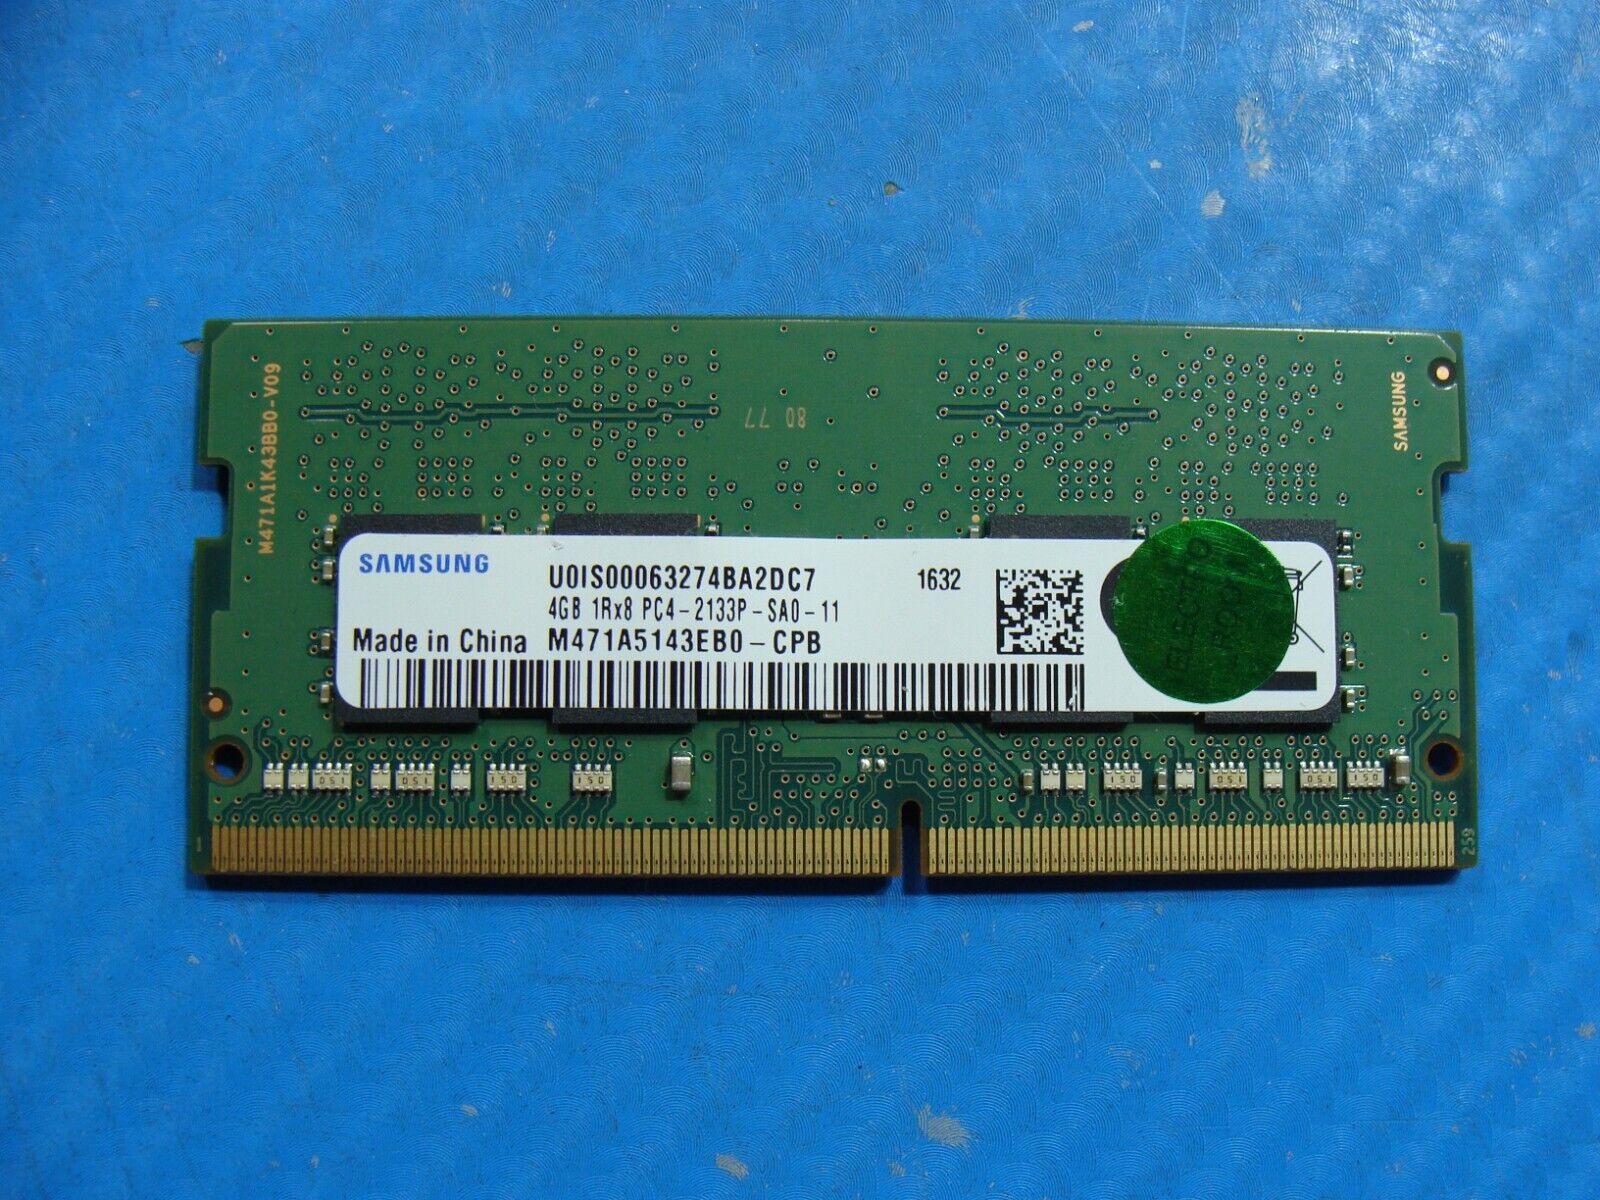 Lenovo T460s Samsung 4GB 1Rx8 PC4-2133P Memory RAM SO-DIMM M471A5143EB0-CPB